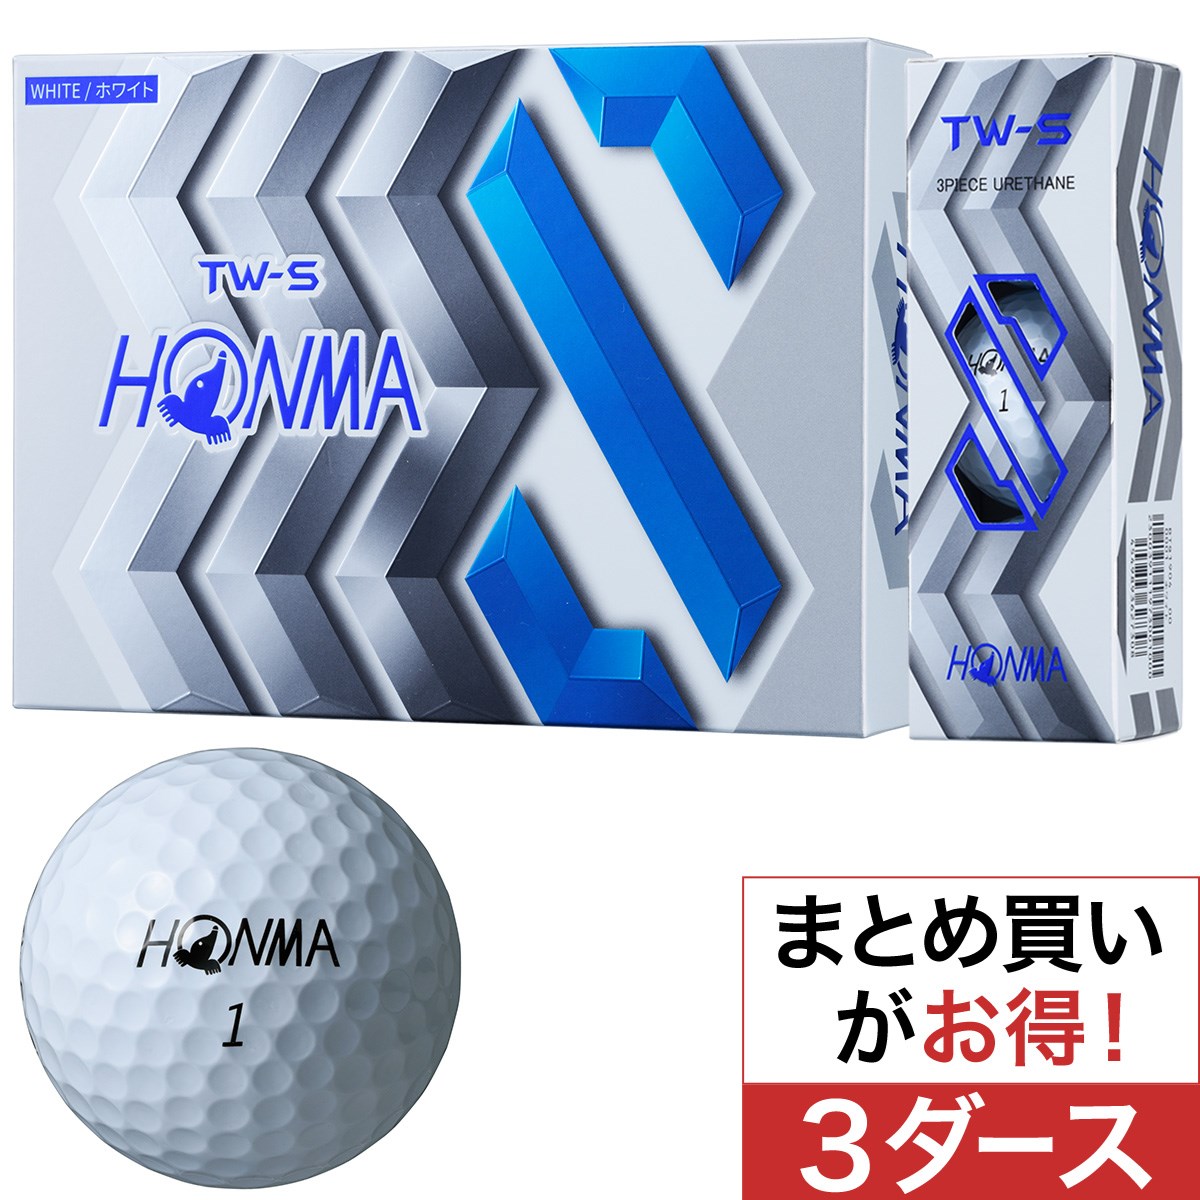 本間ゴルフ(HONMA GOLF) TW-S ボール 3ダースセット 